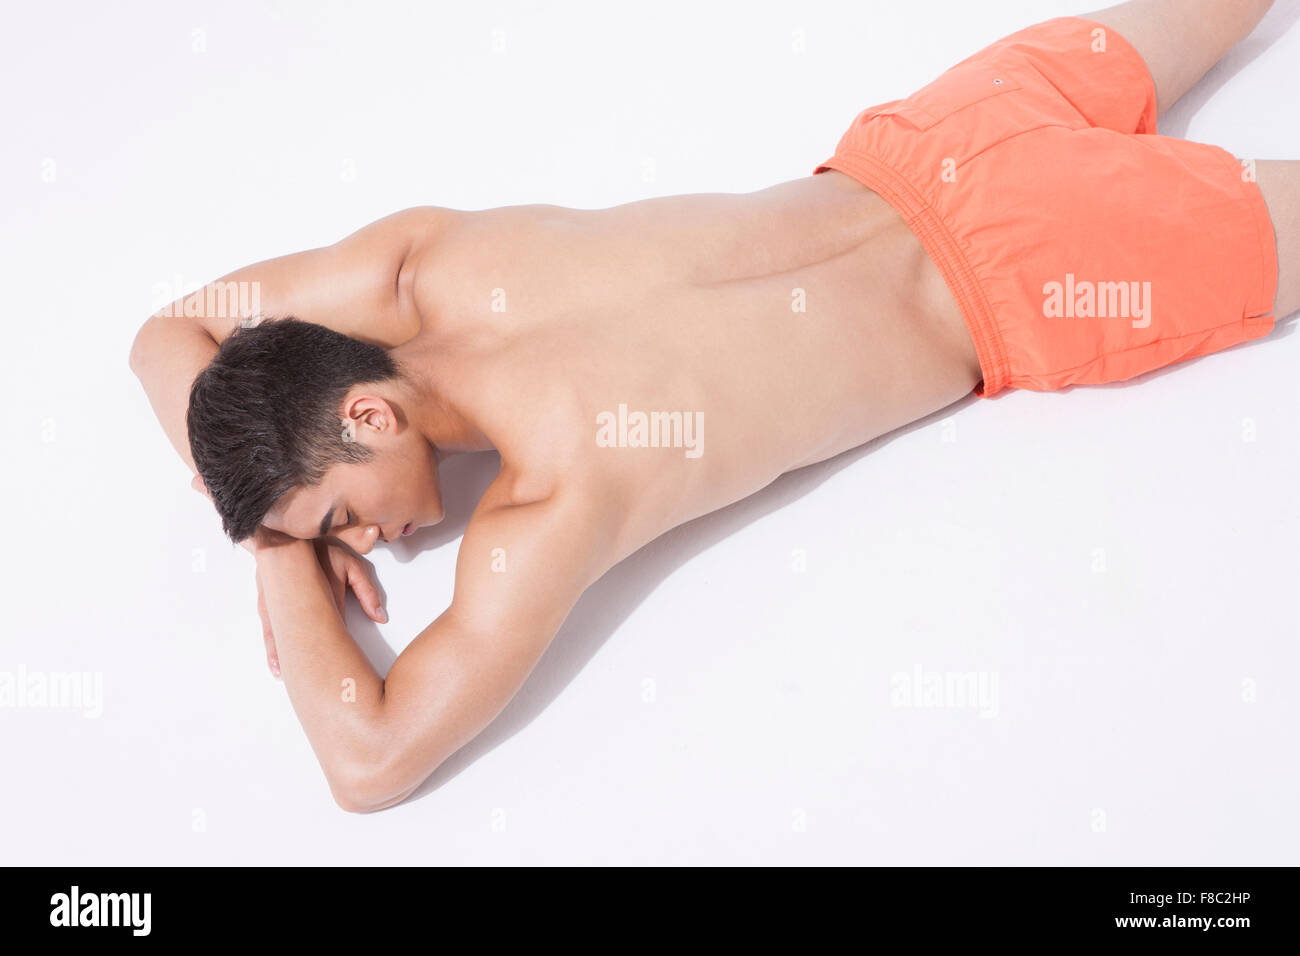 Alto ángulo de muscular en natación pantalones hombre tumbado en la parte delantera descansando su cabeza en sus manos con los ojos cerrados Foto de stock